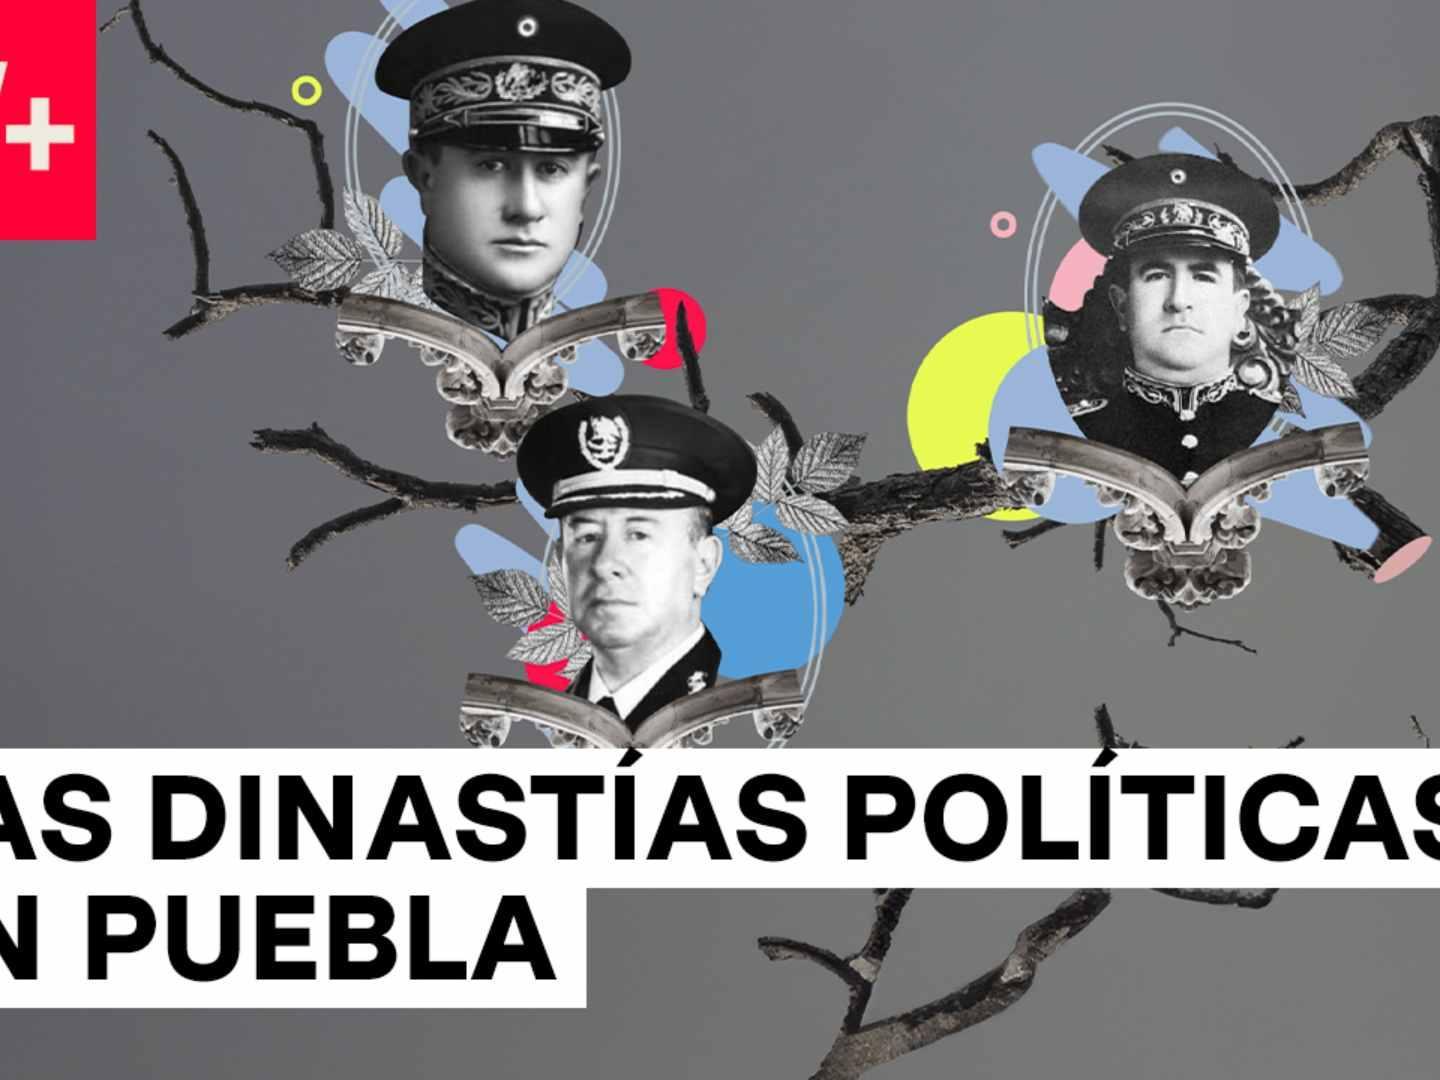 Las Dinastías Políticas de Puebla